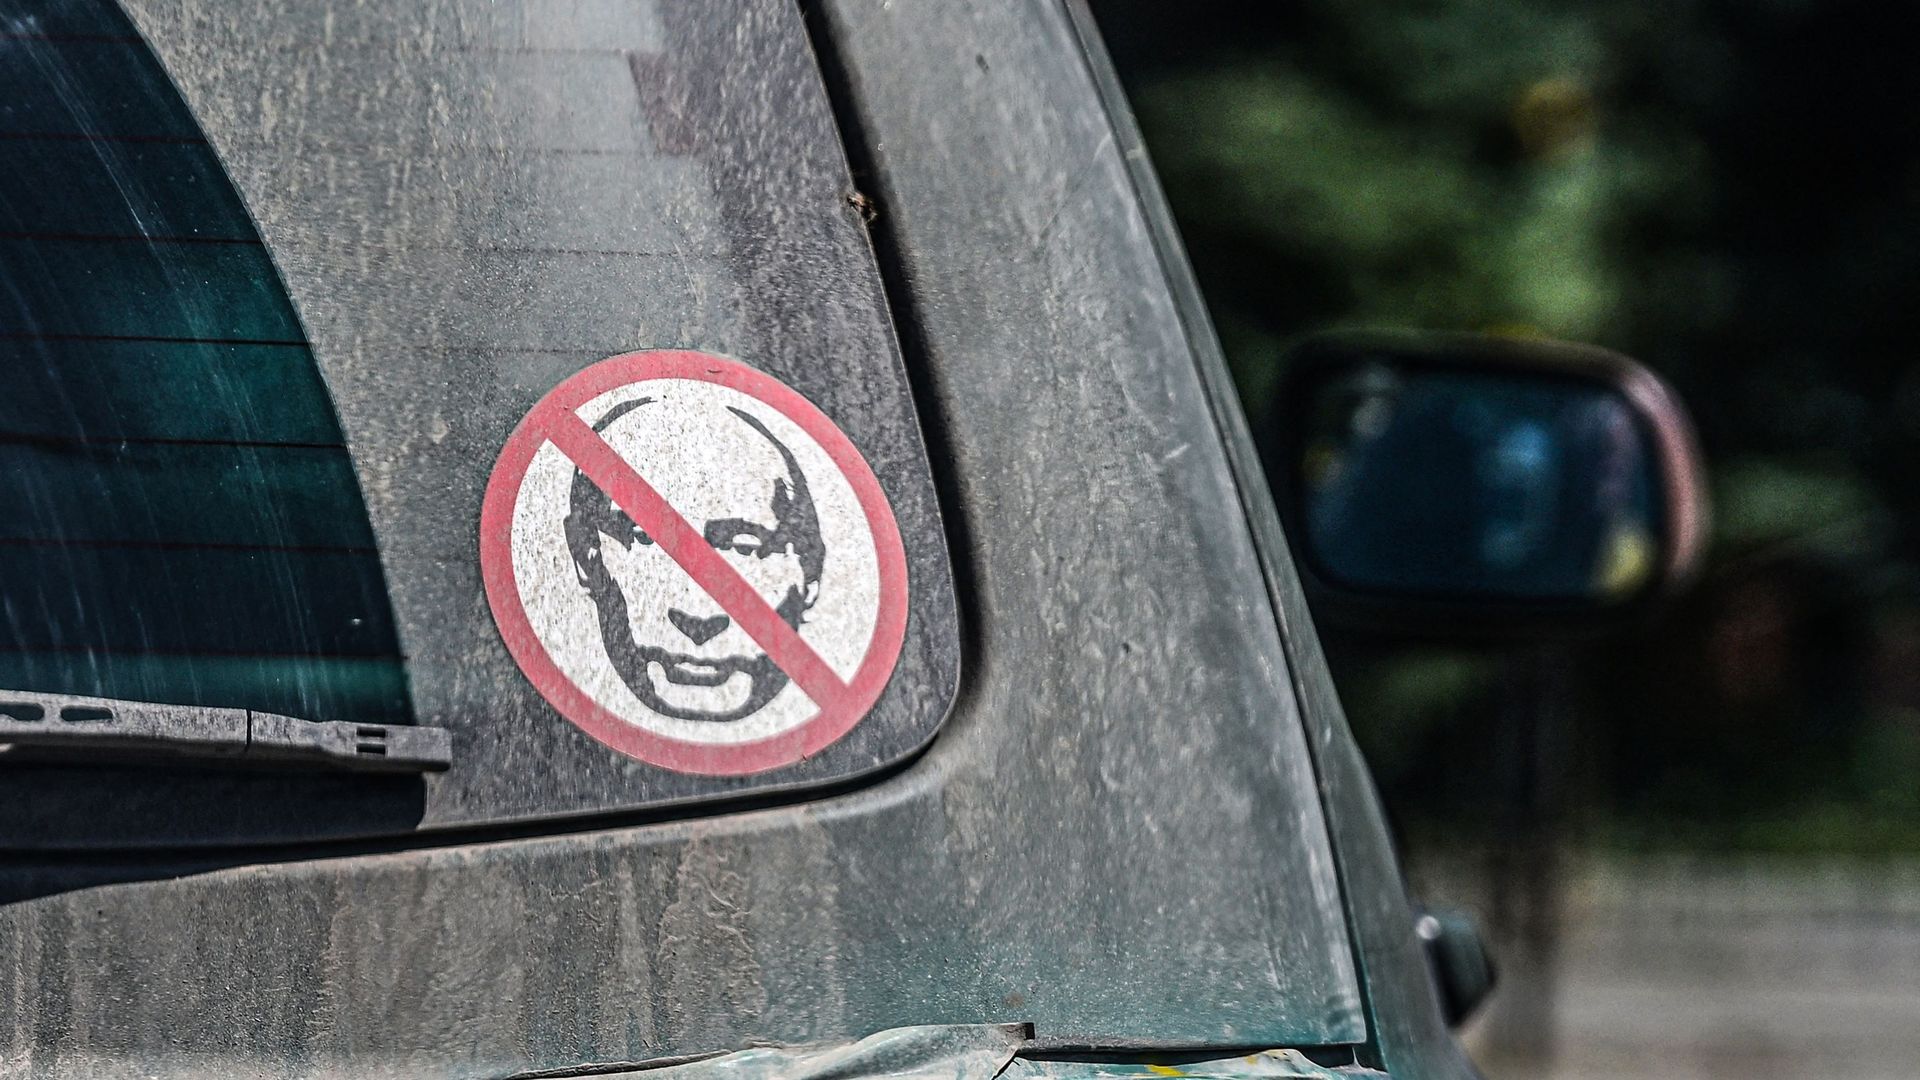 Autocollant contre Vladimir Poutine à l’arrière d’une voiture à Kramatorsk, le 15 juillet (illustration).